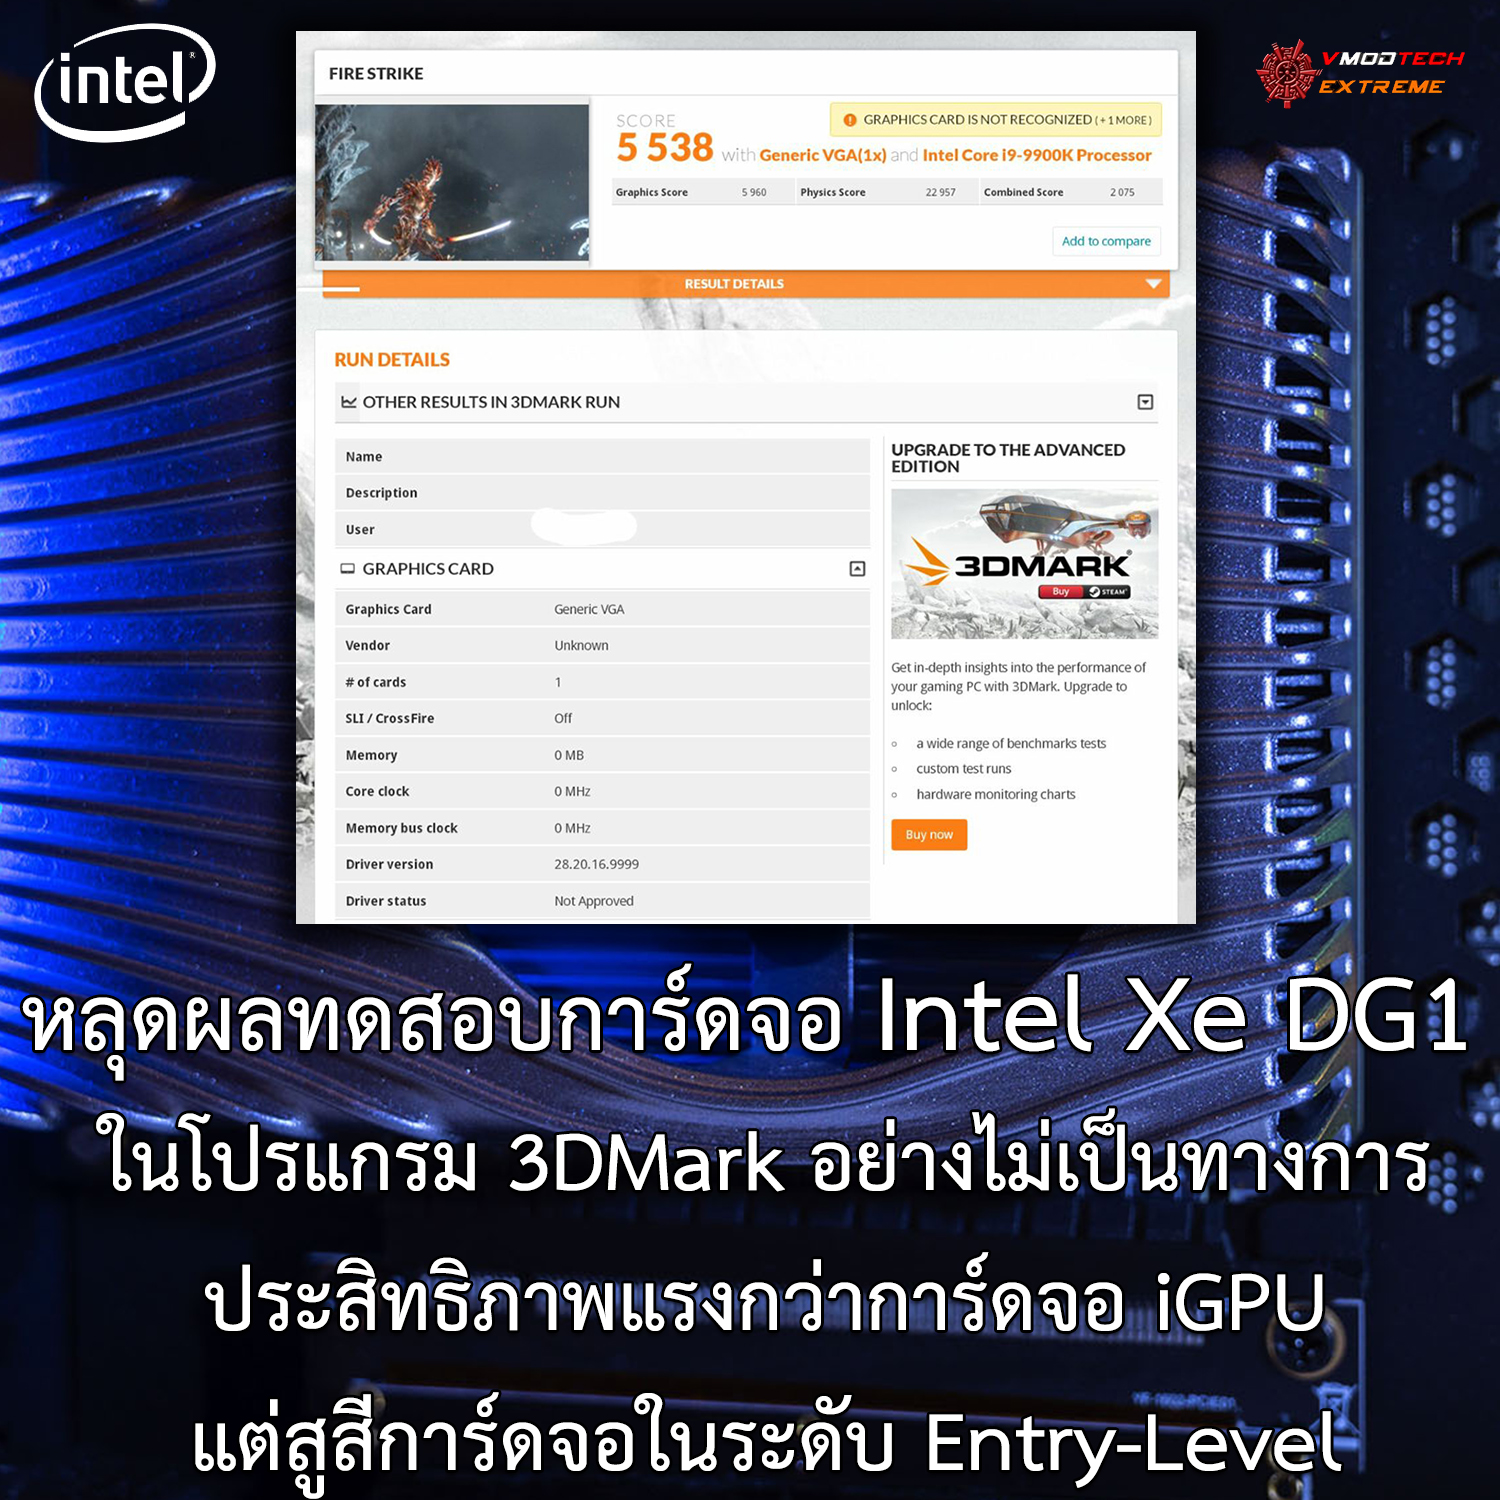 หลุดผลทดสอบที่คาดว่าเป็นการ์ดจอ Intel Xe DG1 ในโปรแกรม 3DMark อย่างไม่เป็นทางการ 